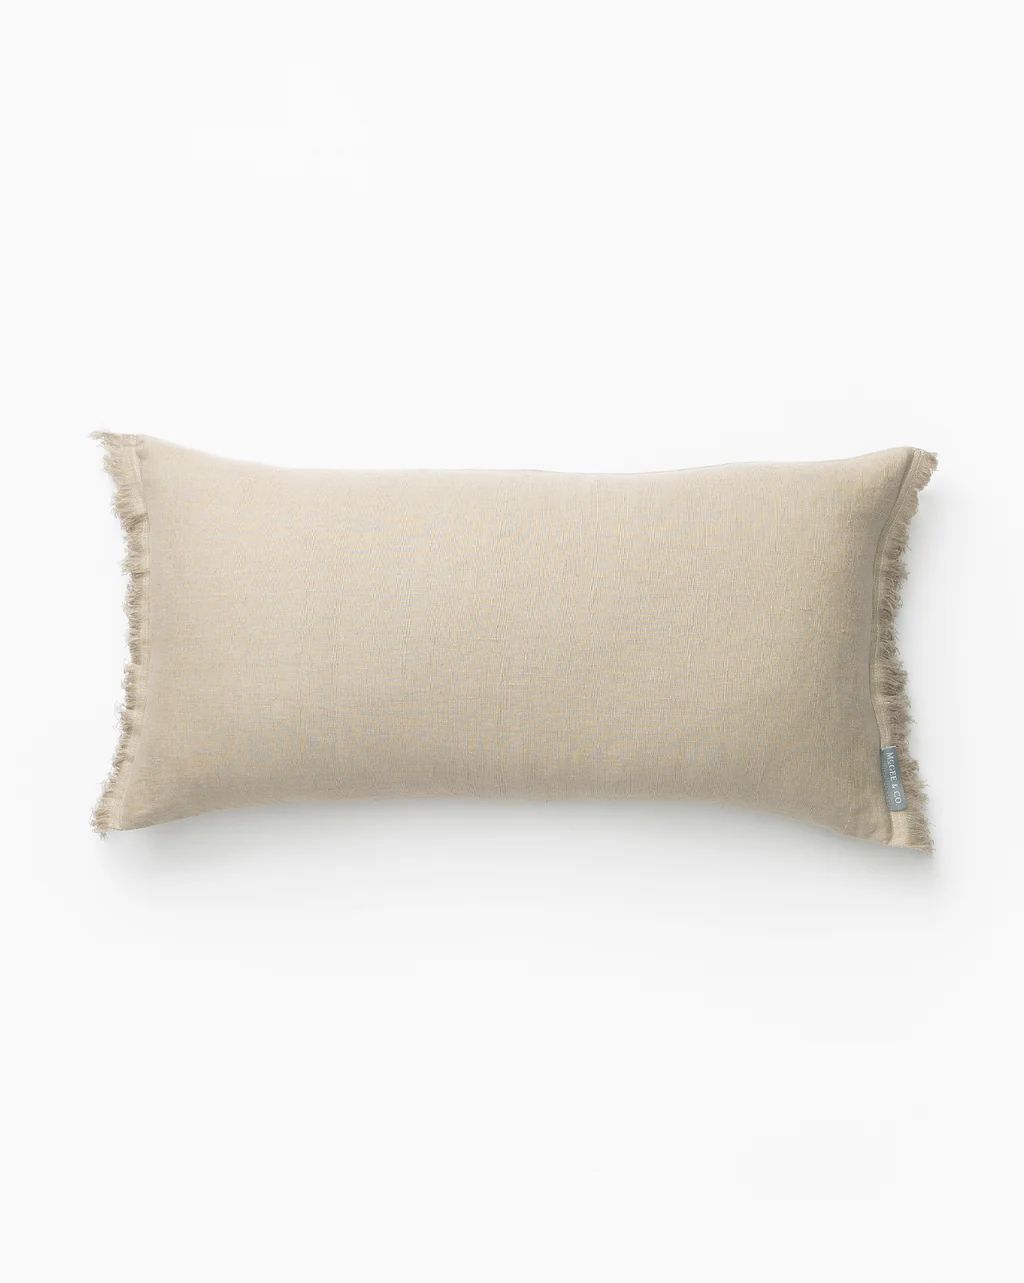 Hazelton Mushroom Fringed Pillow Cover | McGee & Co. (US)